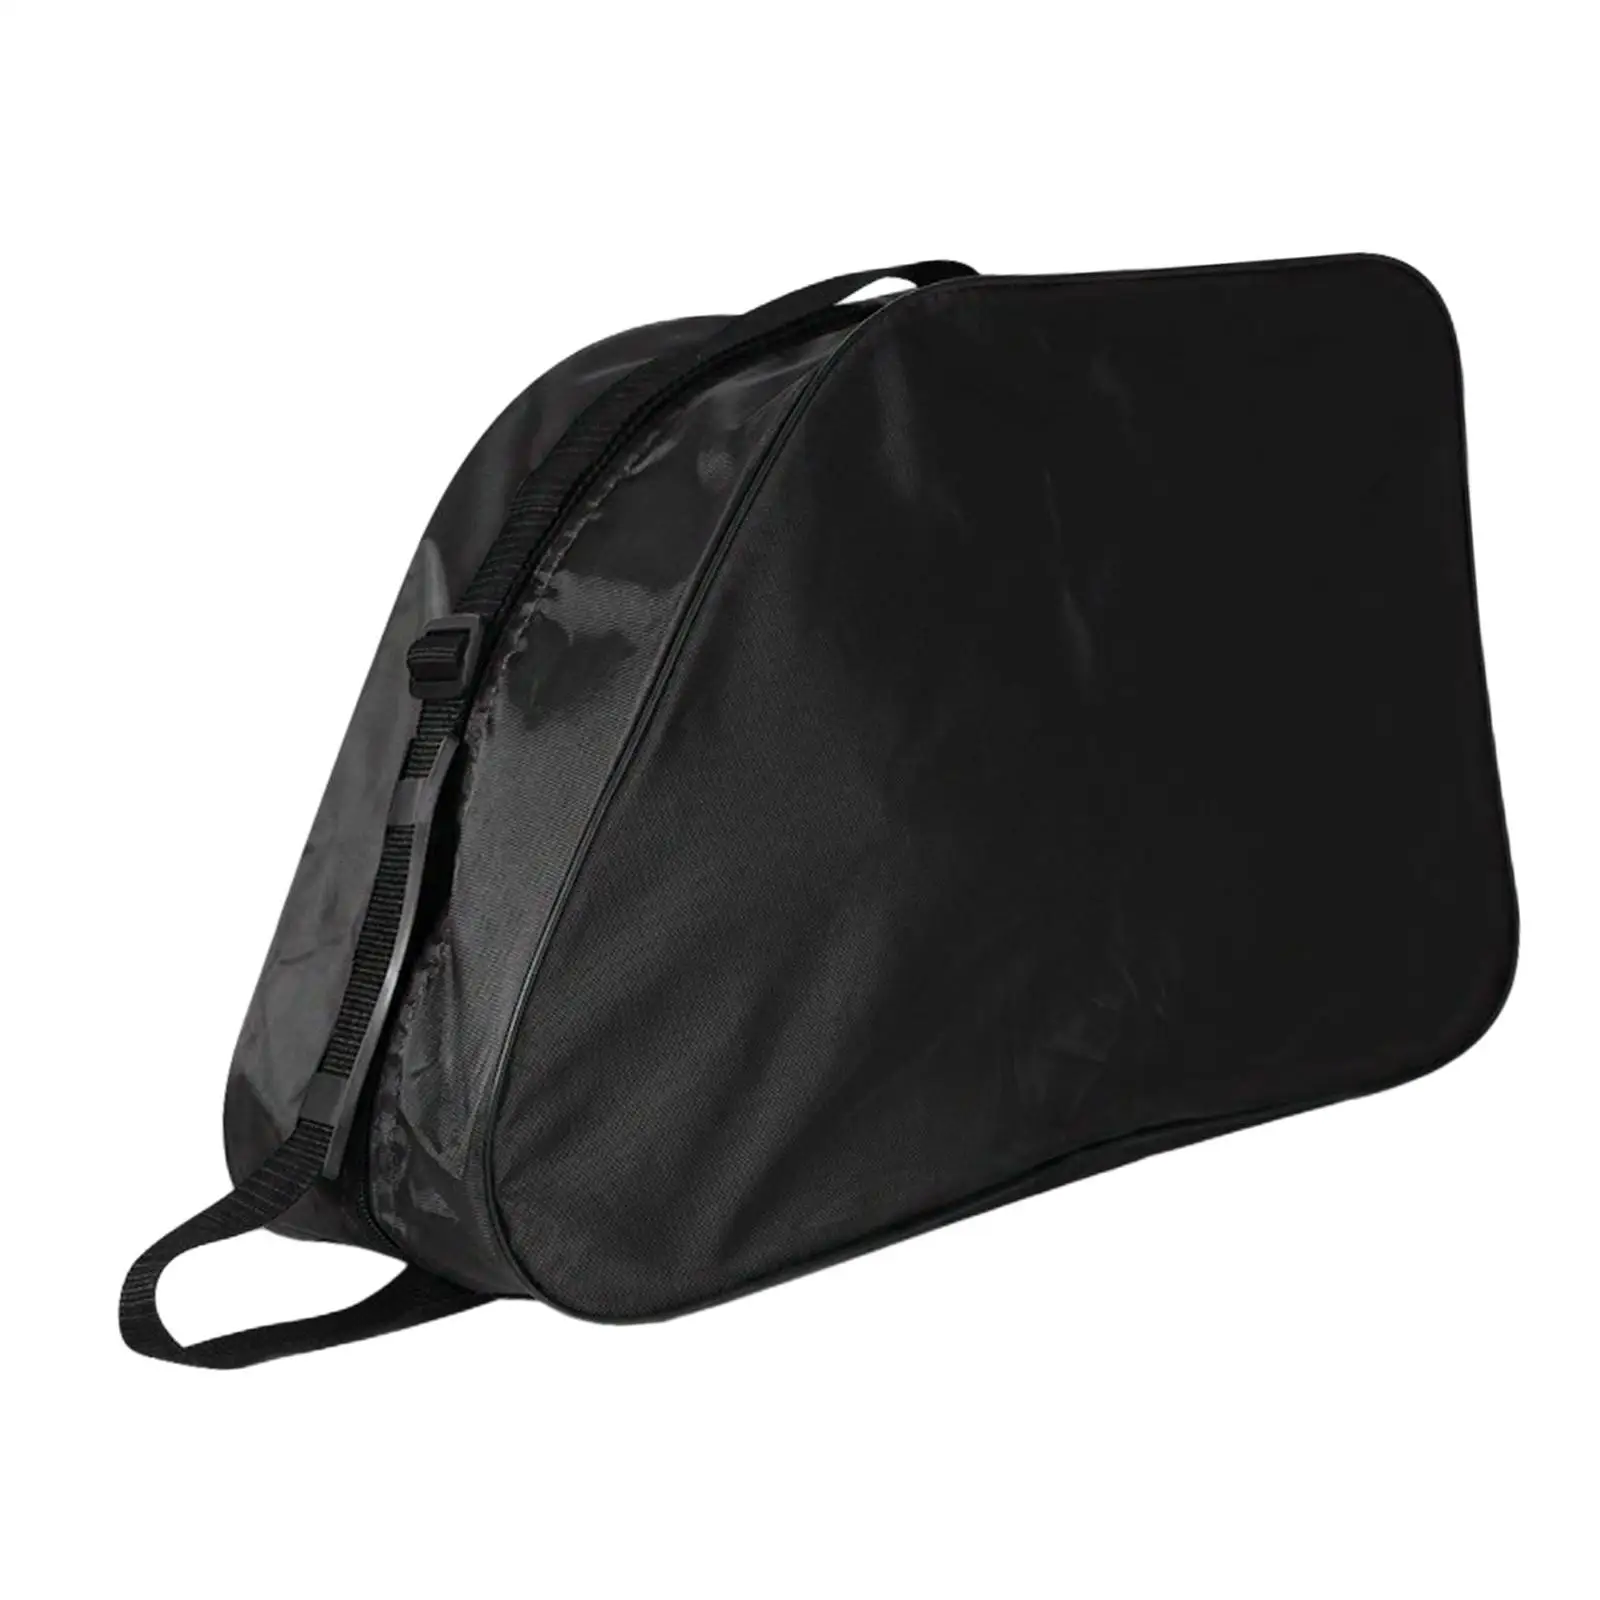 Roller Skate Bag Skate Carry Bag with Shoulder Strap Skating Shoes Bag Ice Skating Bag for Inline Skates Skate Accessories